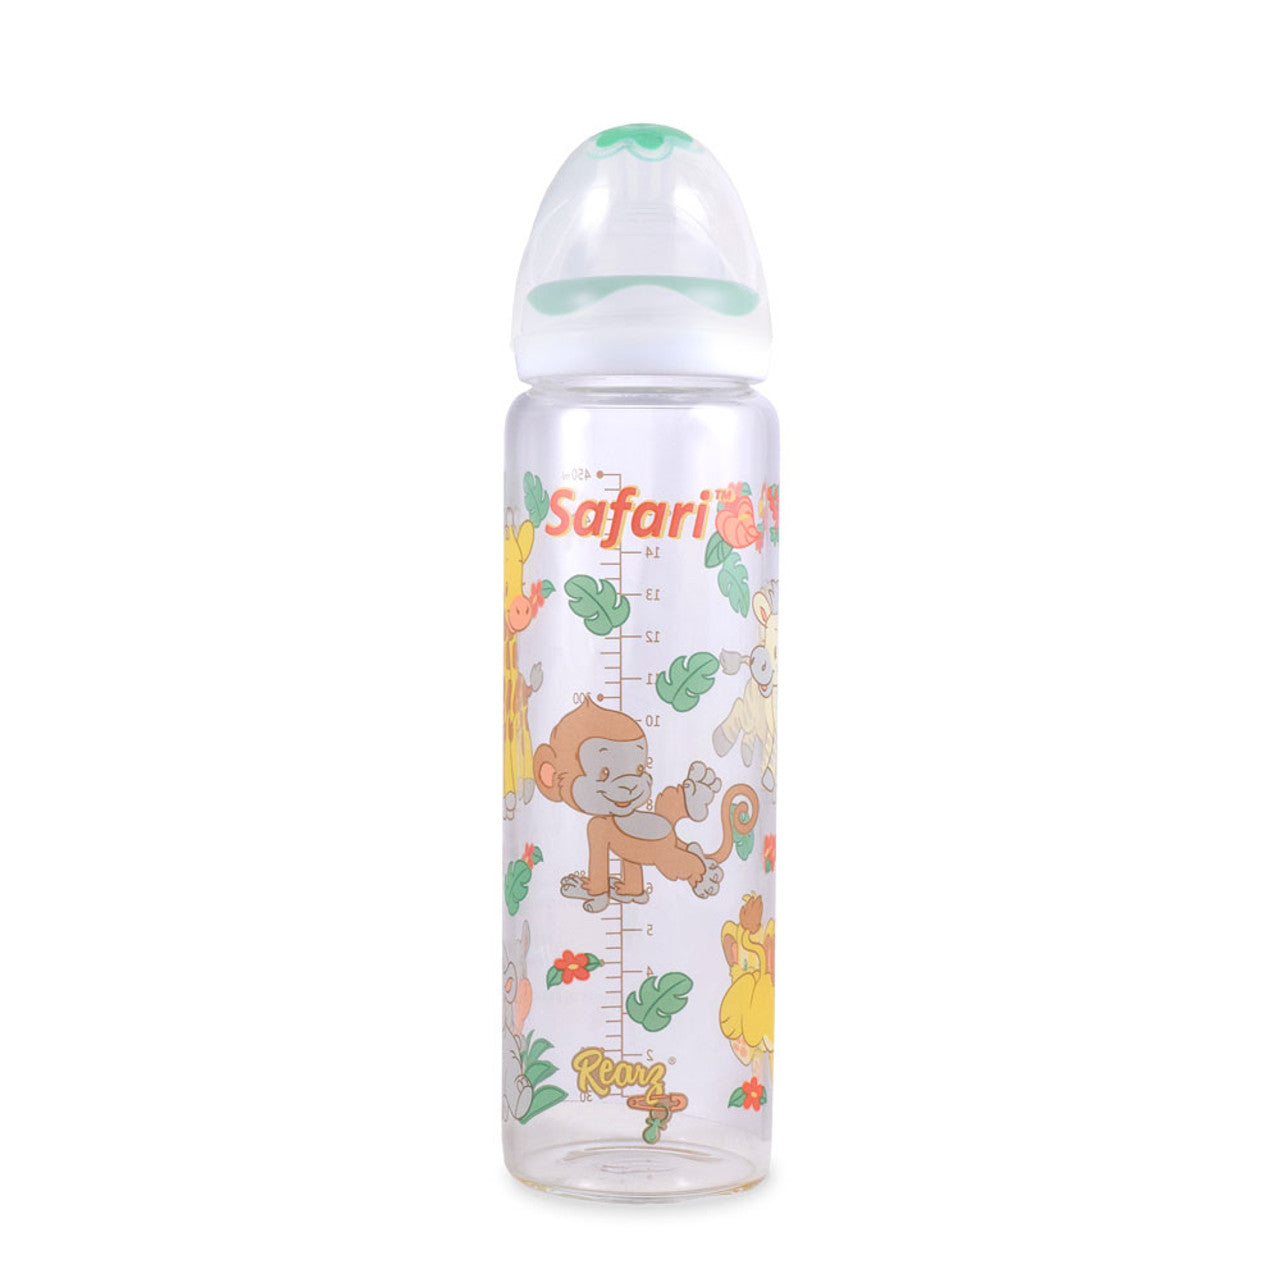 Safari Adult Baby Bottle